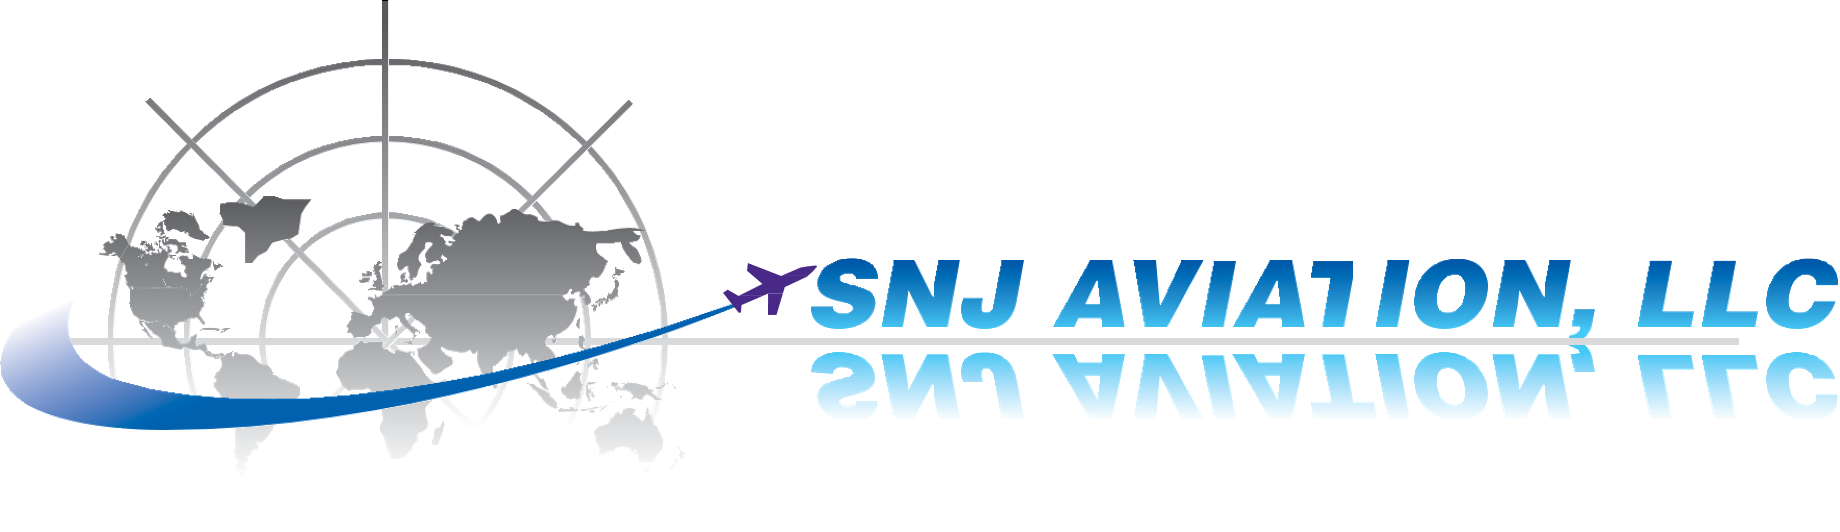 SNJ Aviation